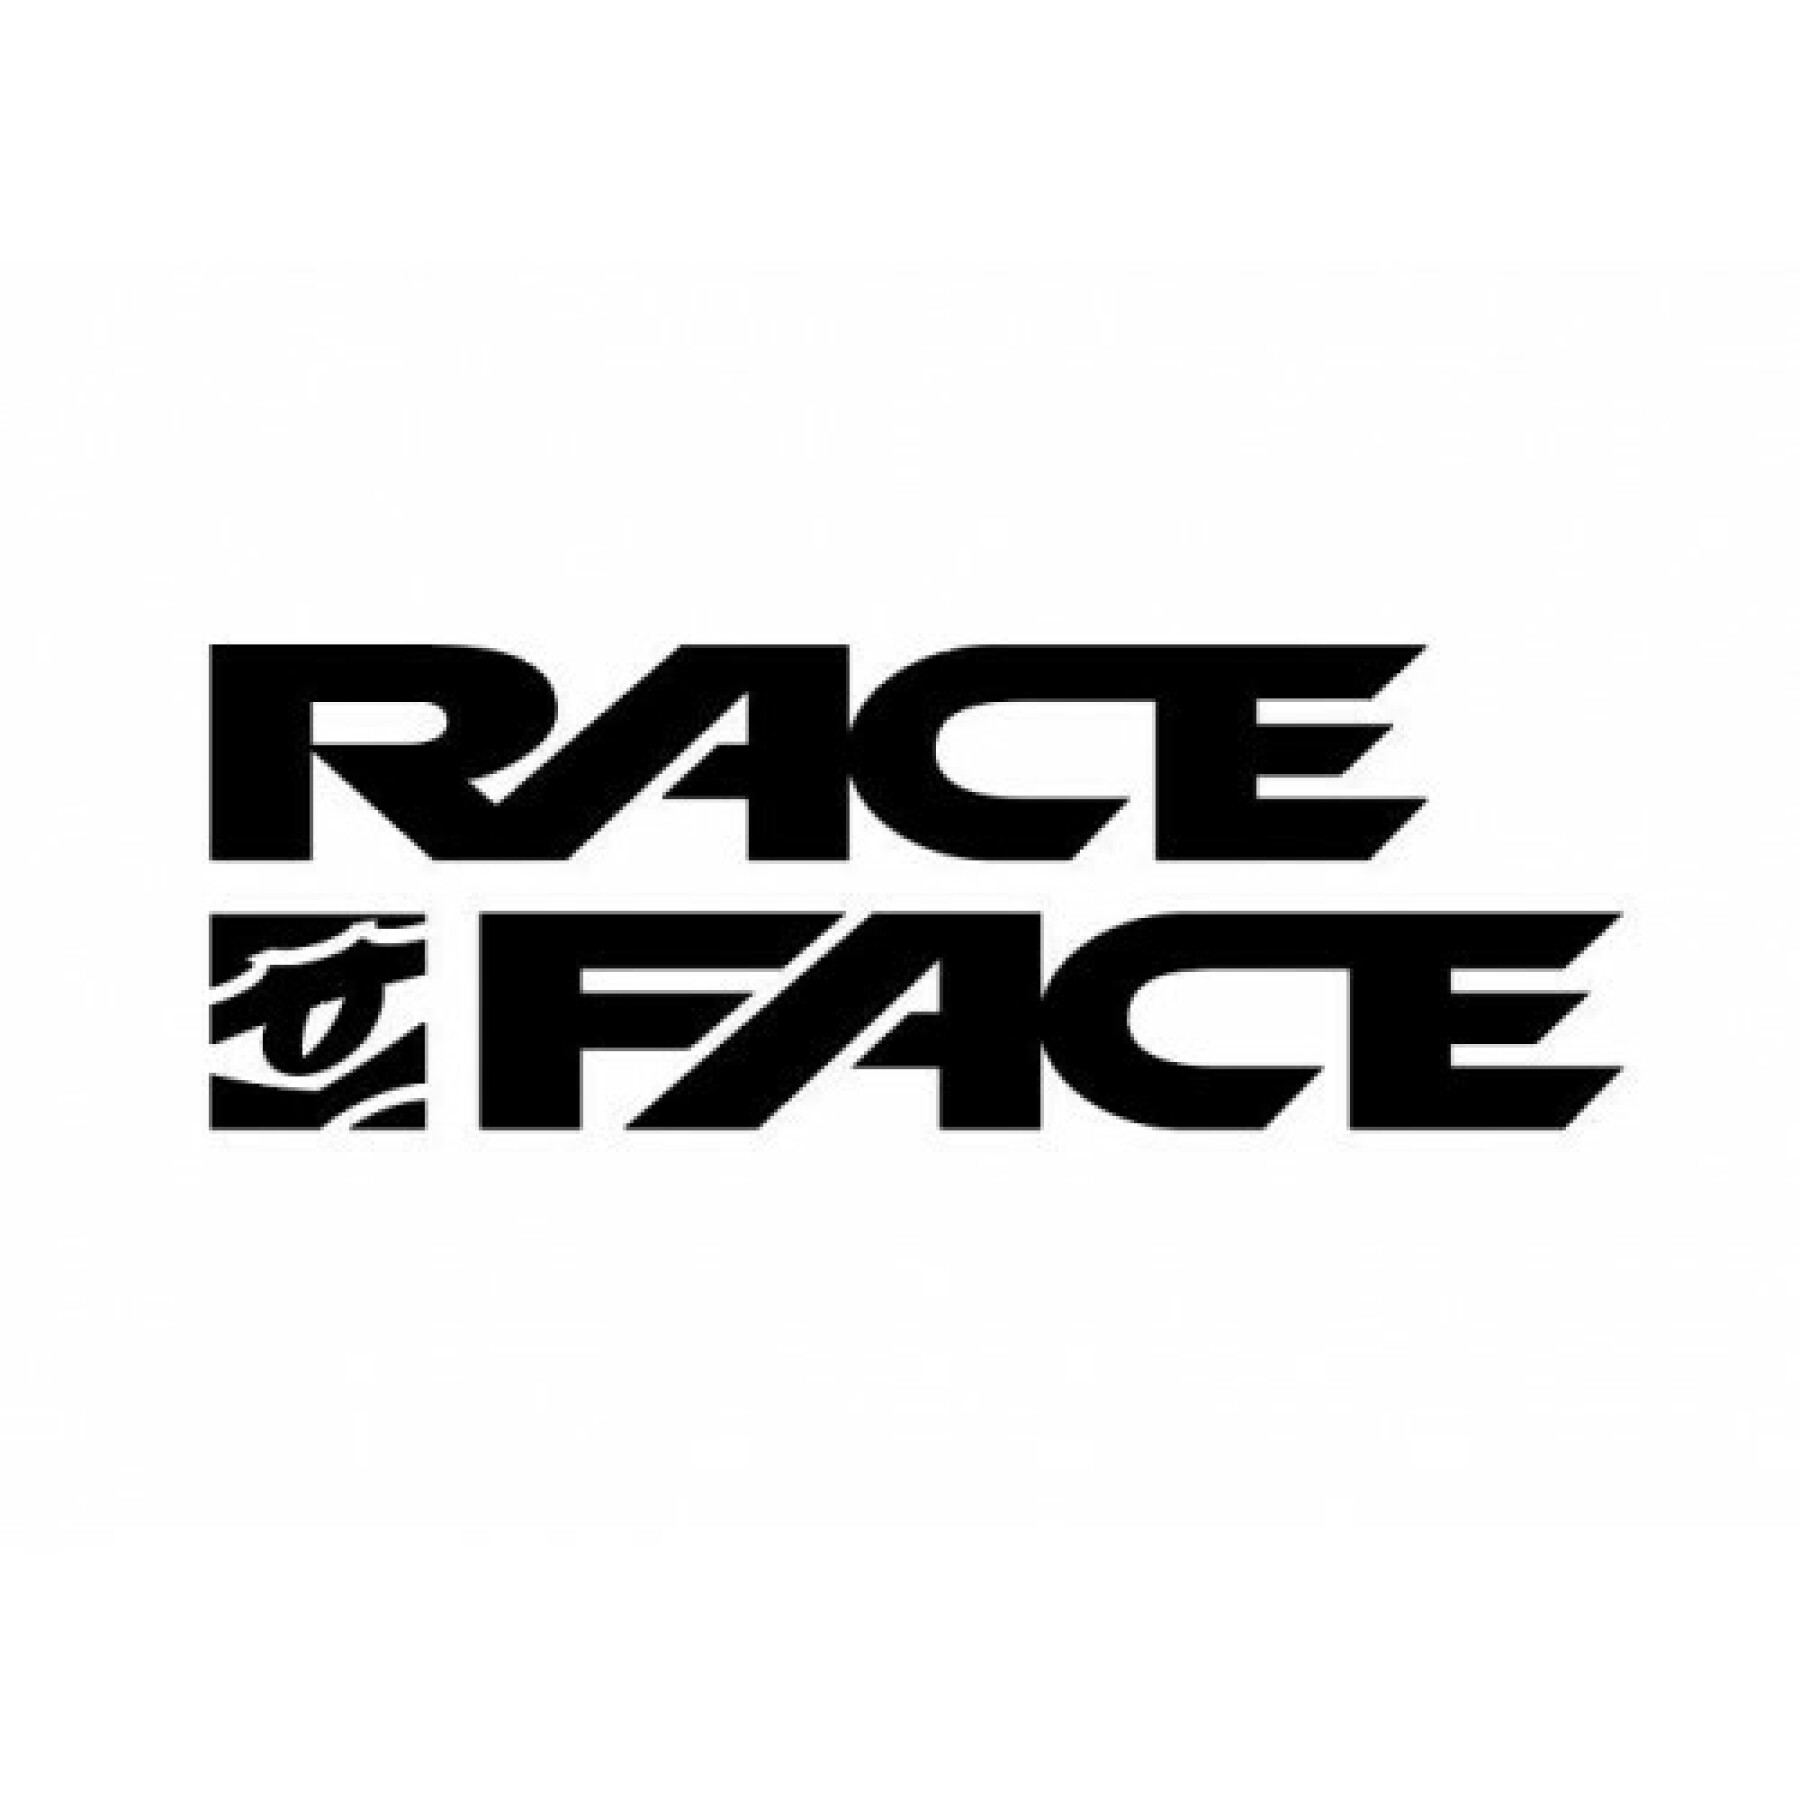 Cerchio Race Face arc offset - 30 - 27.5 - 28t